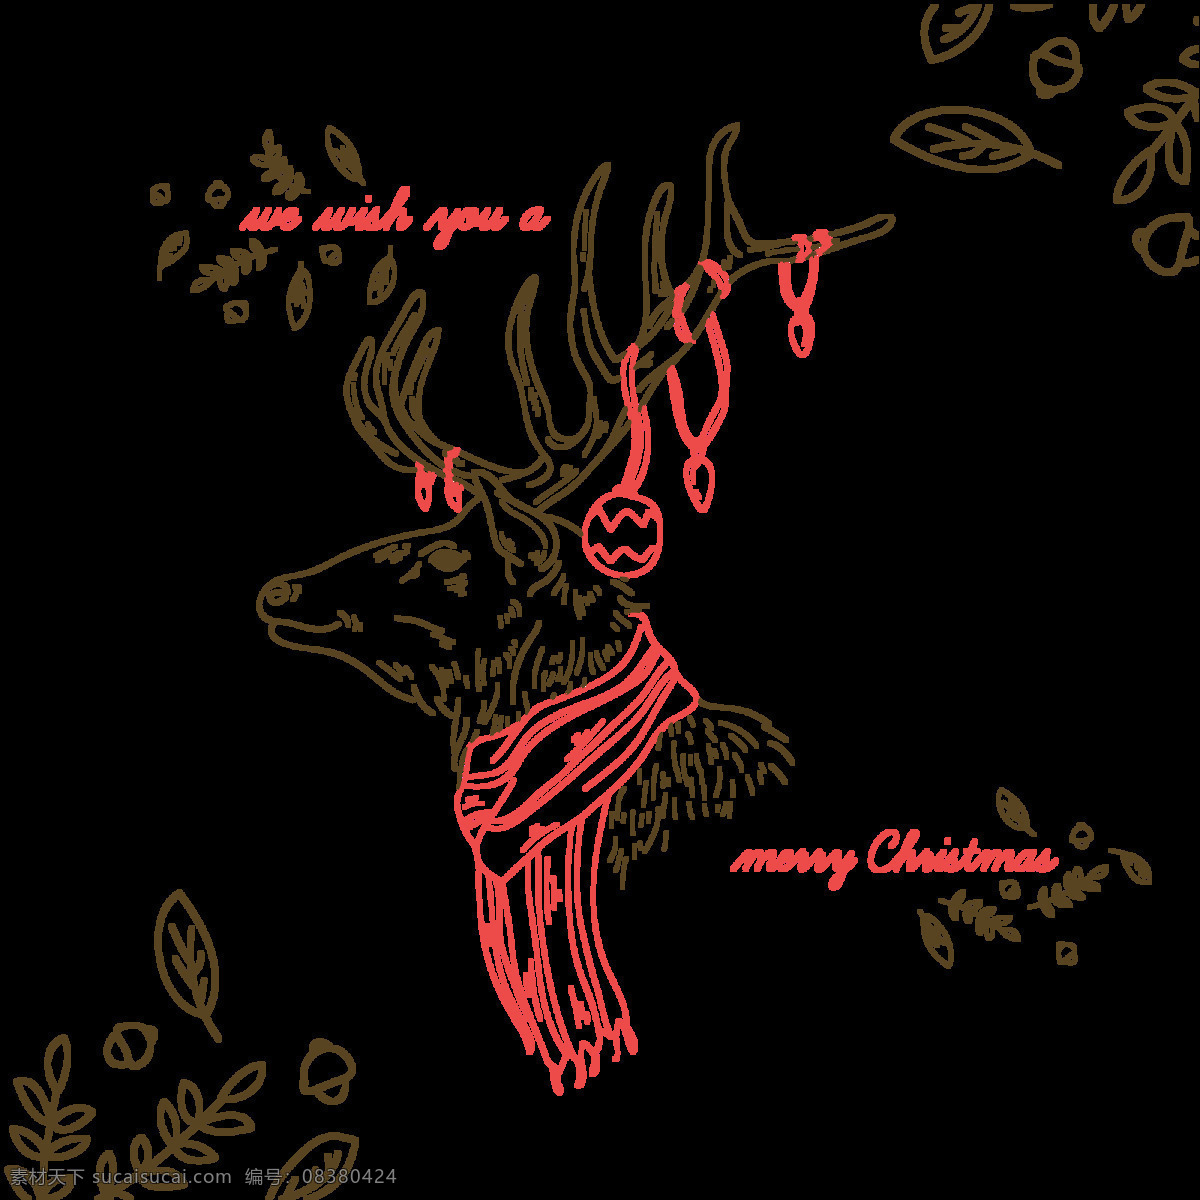 手绘 圣诞节 麋鹿 元素 节日元素 卡通麋鹿 卡通圣诞元素 麋鹿png 麋鹿下载 麋鹿元素 平安夜 圣诞节装饰 圣诞麋鹿 手绘麋鹿 新年快乐